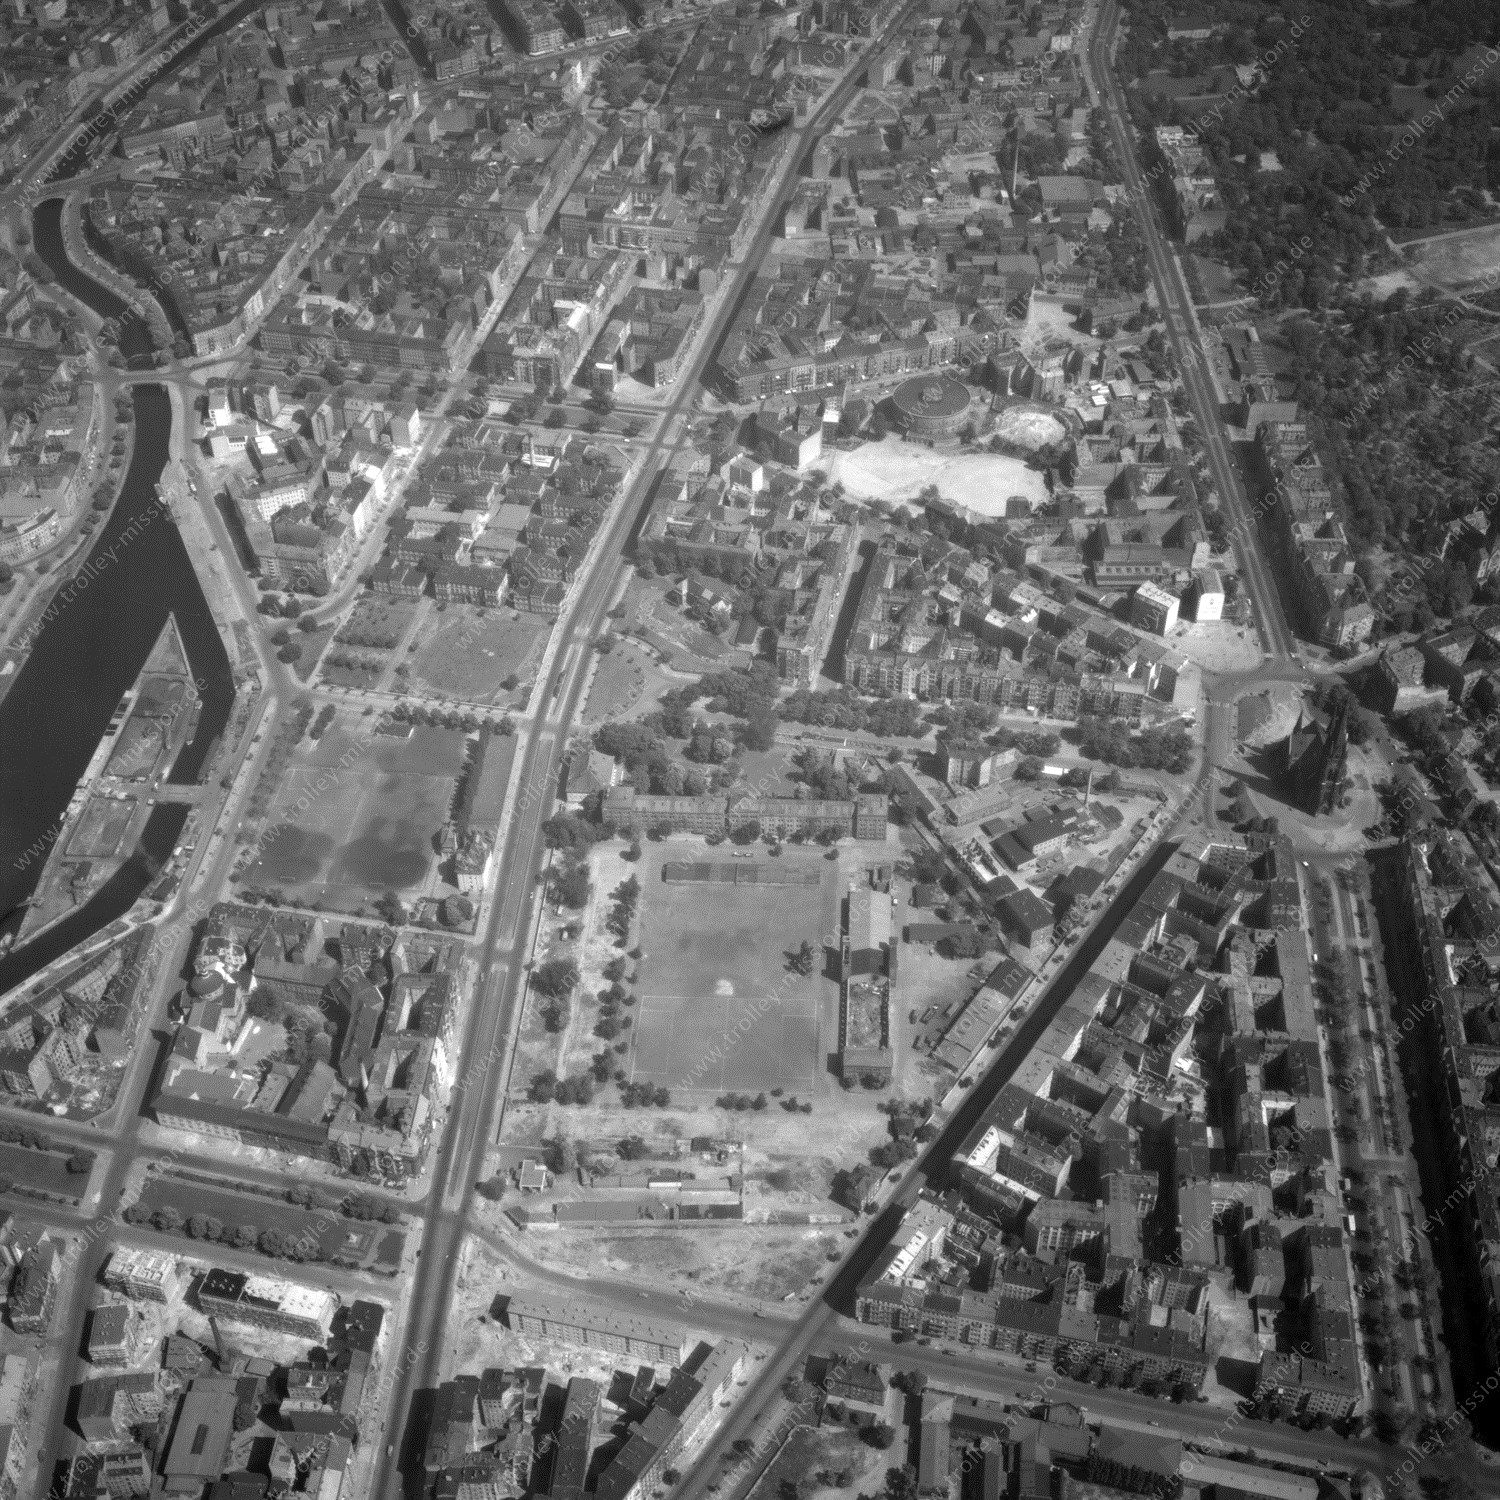 Alte Fotos und Luftbilder von Berlin - Luftbildaufnahme Nr. 04 - Historische Luftaufnahmen von West-Berlin aus dem Jahr 1954 - Flugstrecke Kilo